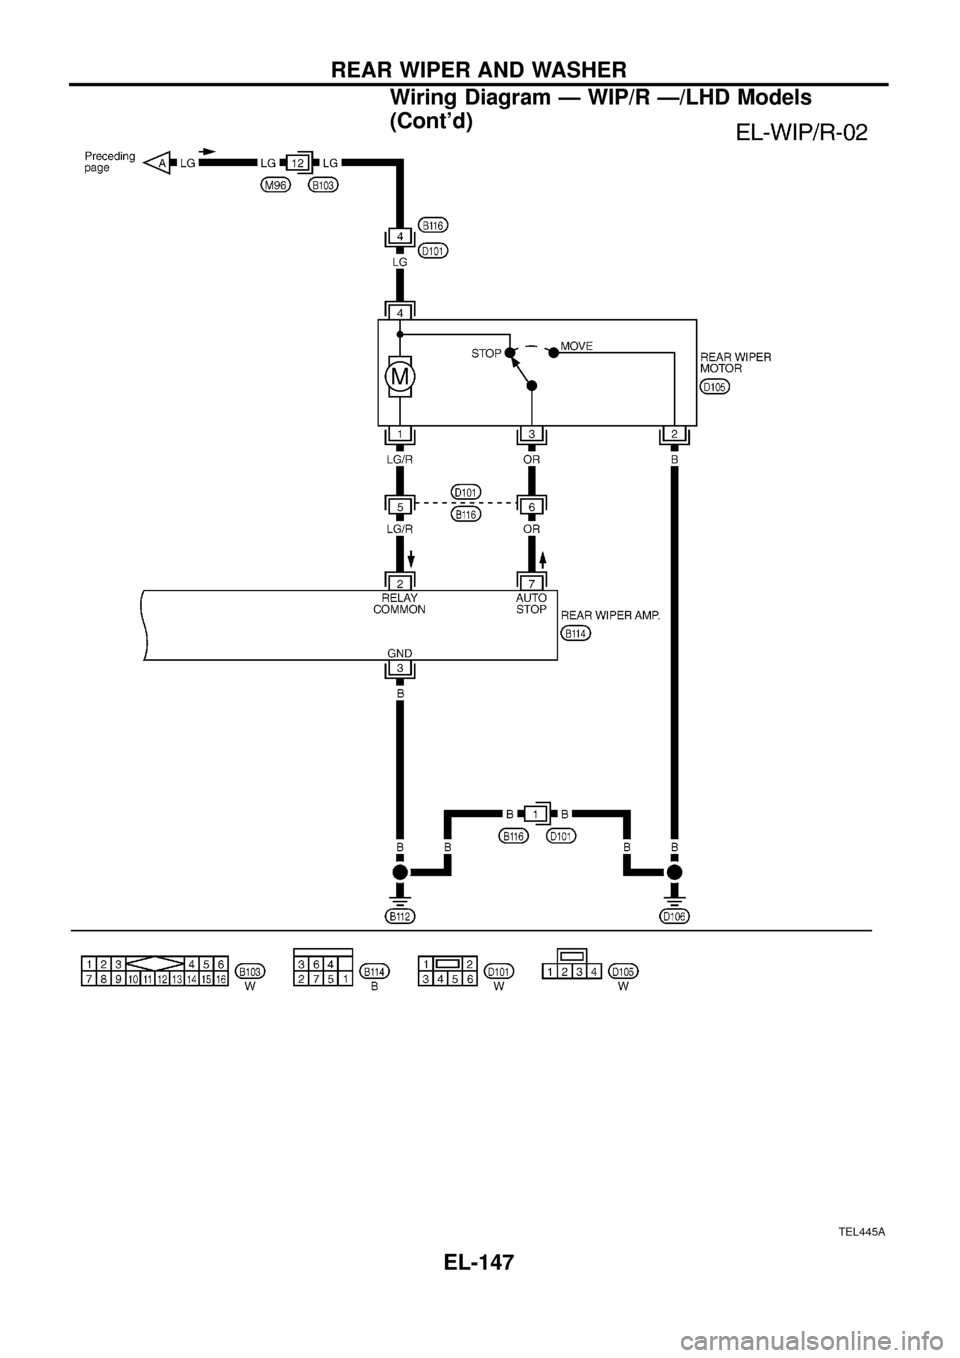 NISSAN PATROL 1998 Y61 / 5.G Electrical System Workshop Manual TEL445A
REAR WIPER AND WASHER
Wiring Diagram Ð WIP/R Ð/LHD Models
(Contd)
EL-147 